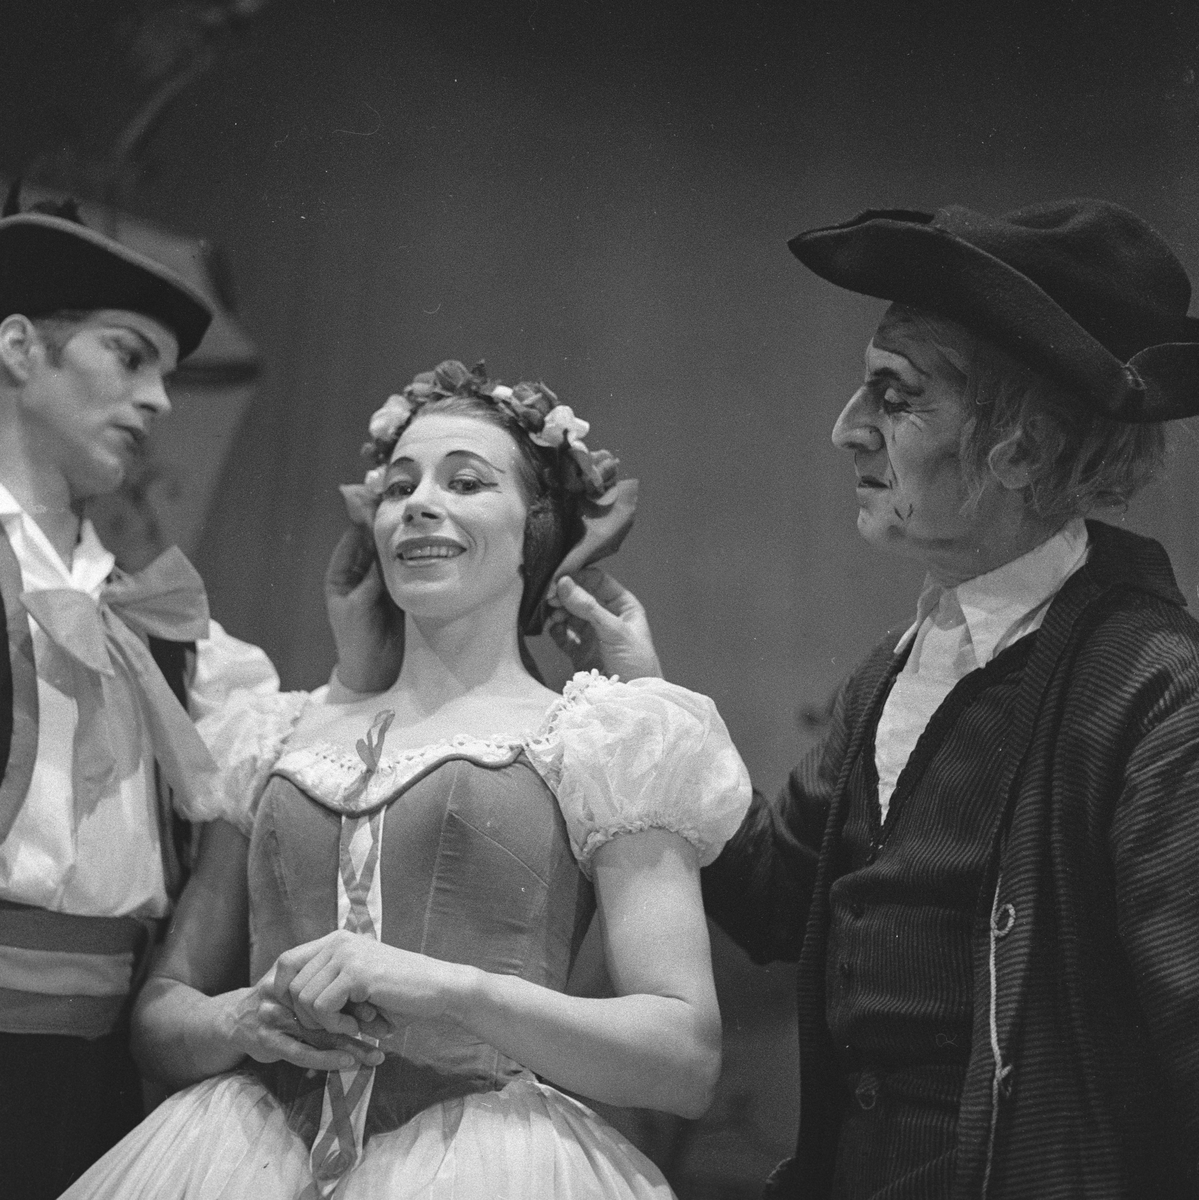 Den Norske Operaballett oppsetningen av "Coppelia" på Folketeatret. Dansere på scenen. Fotografert mars 1959.